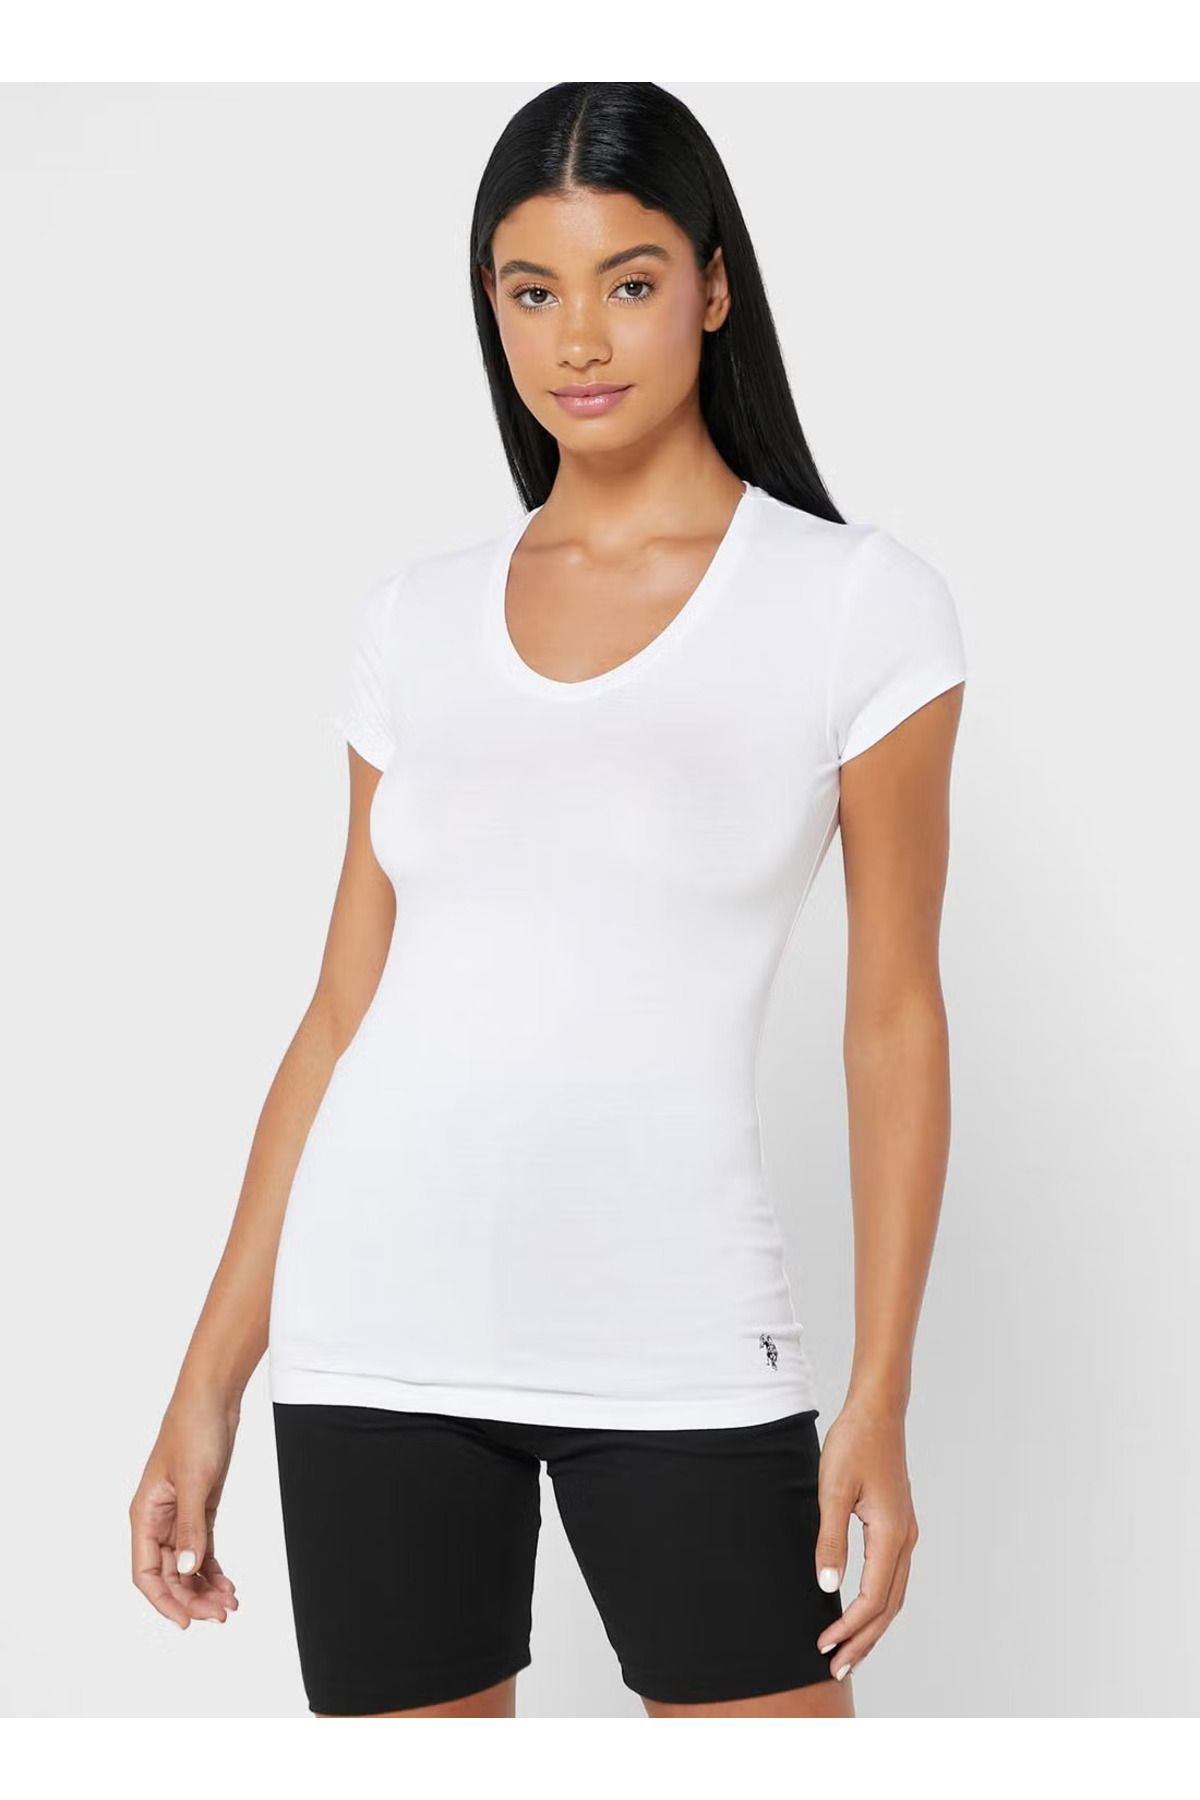 U.S. Polo Assn. Kadın Pamuklu Likralı Modal Basic V Yakalı Kısa Kollu Beyaz T-shirt